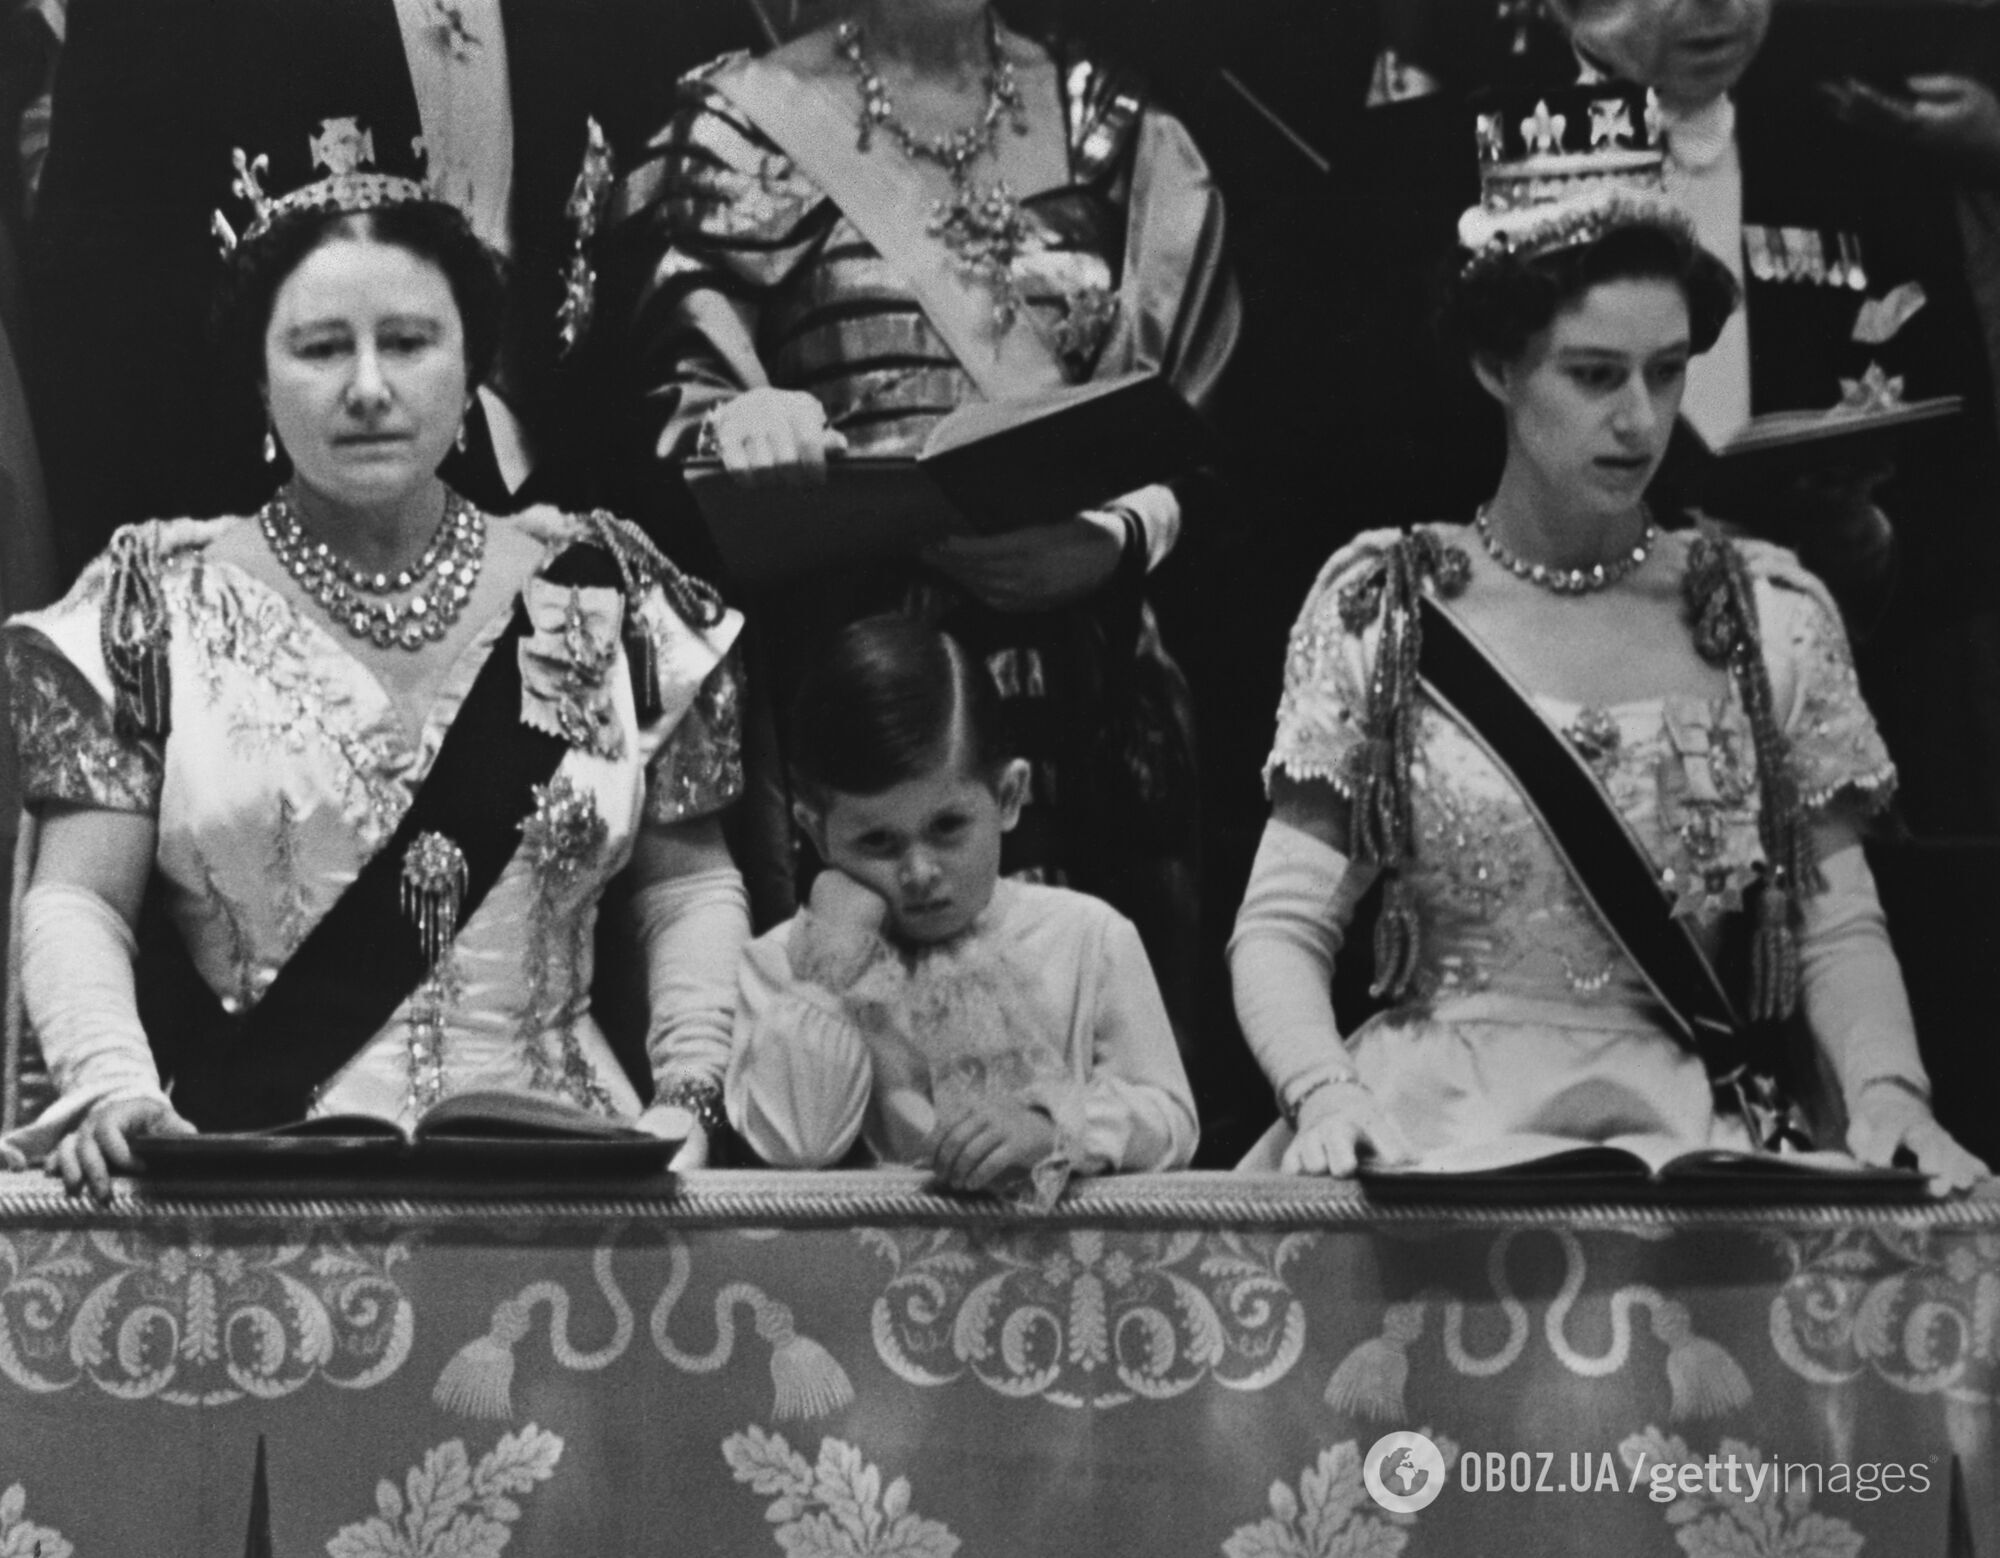 Мама и сын. 10 самых трогательных фото королевы Елизаветы II и принца Чарльза